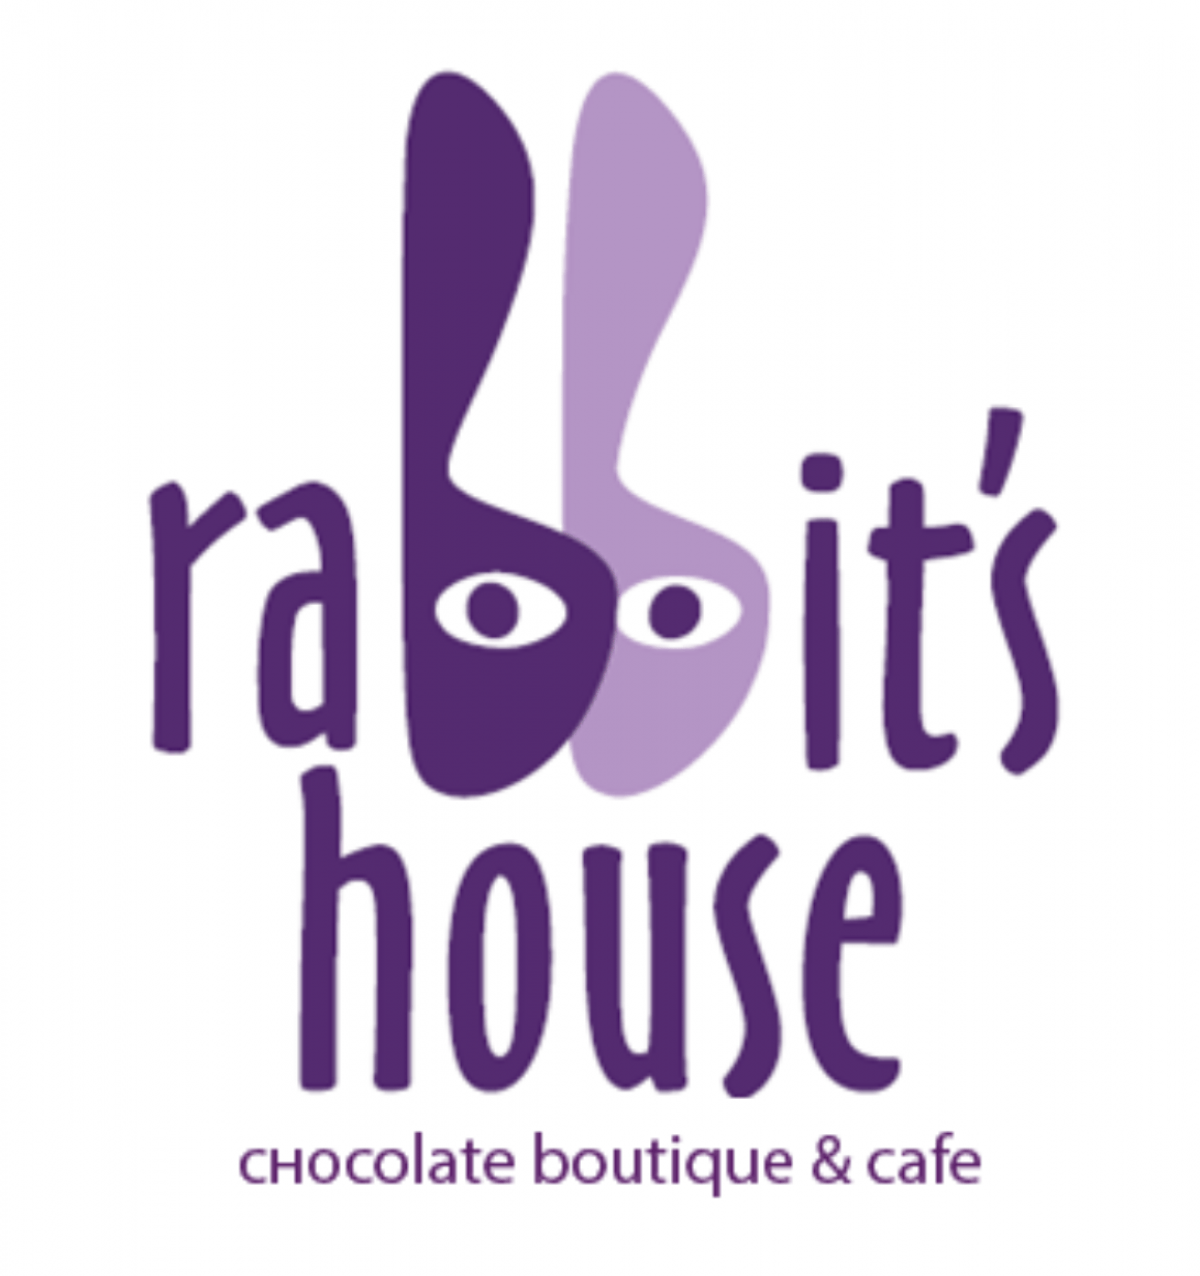 Rabbits house